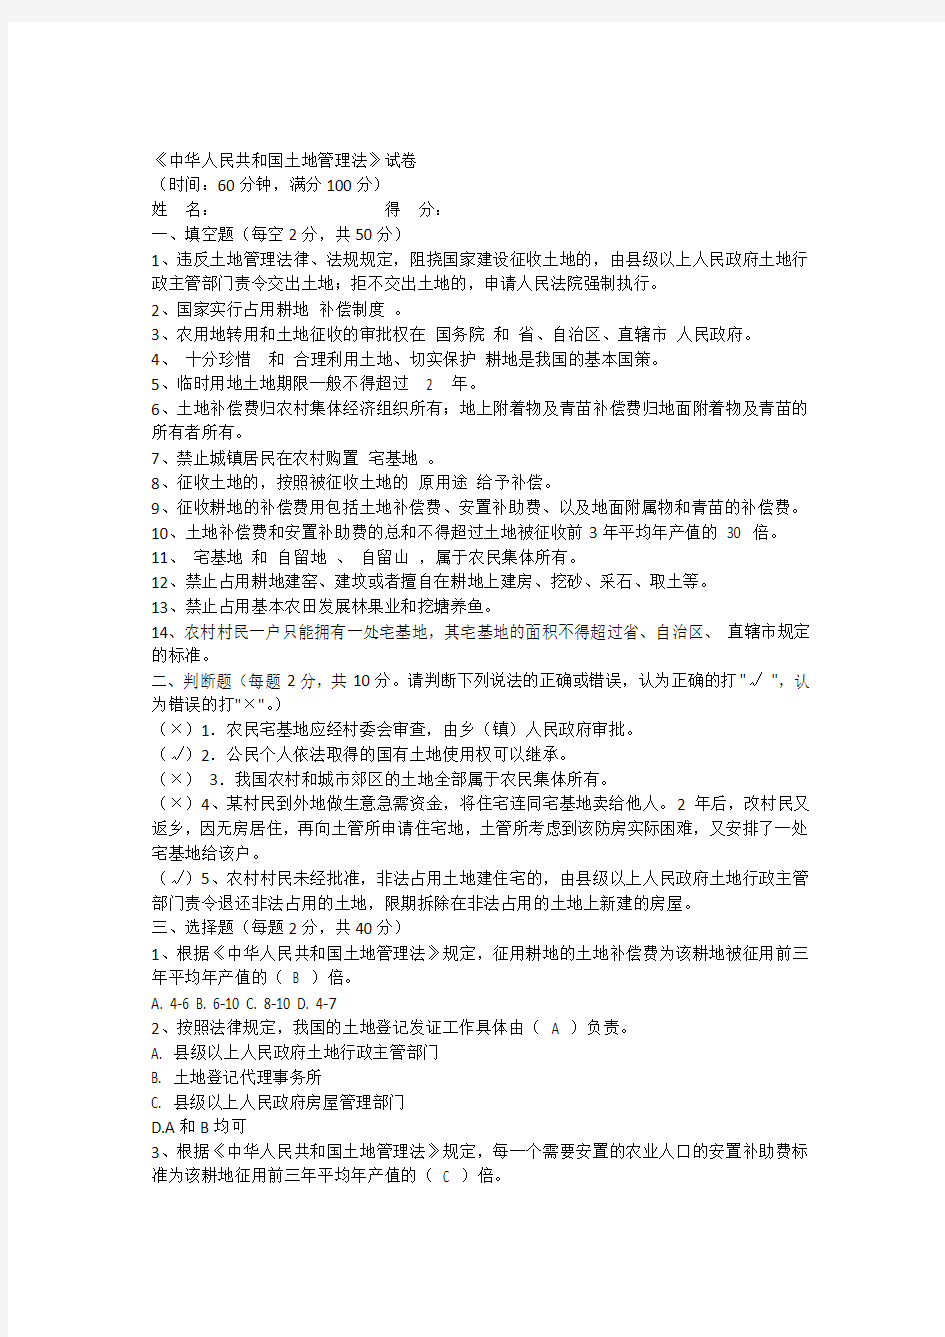 完整word版,中华人民共和国土地管理法试题